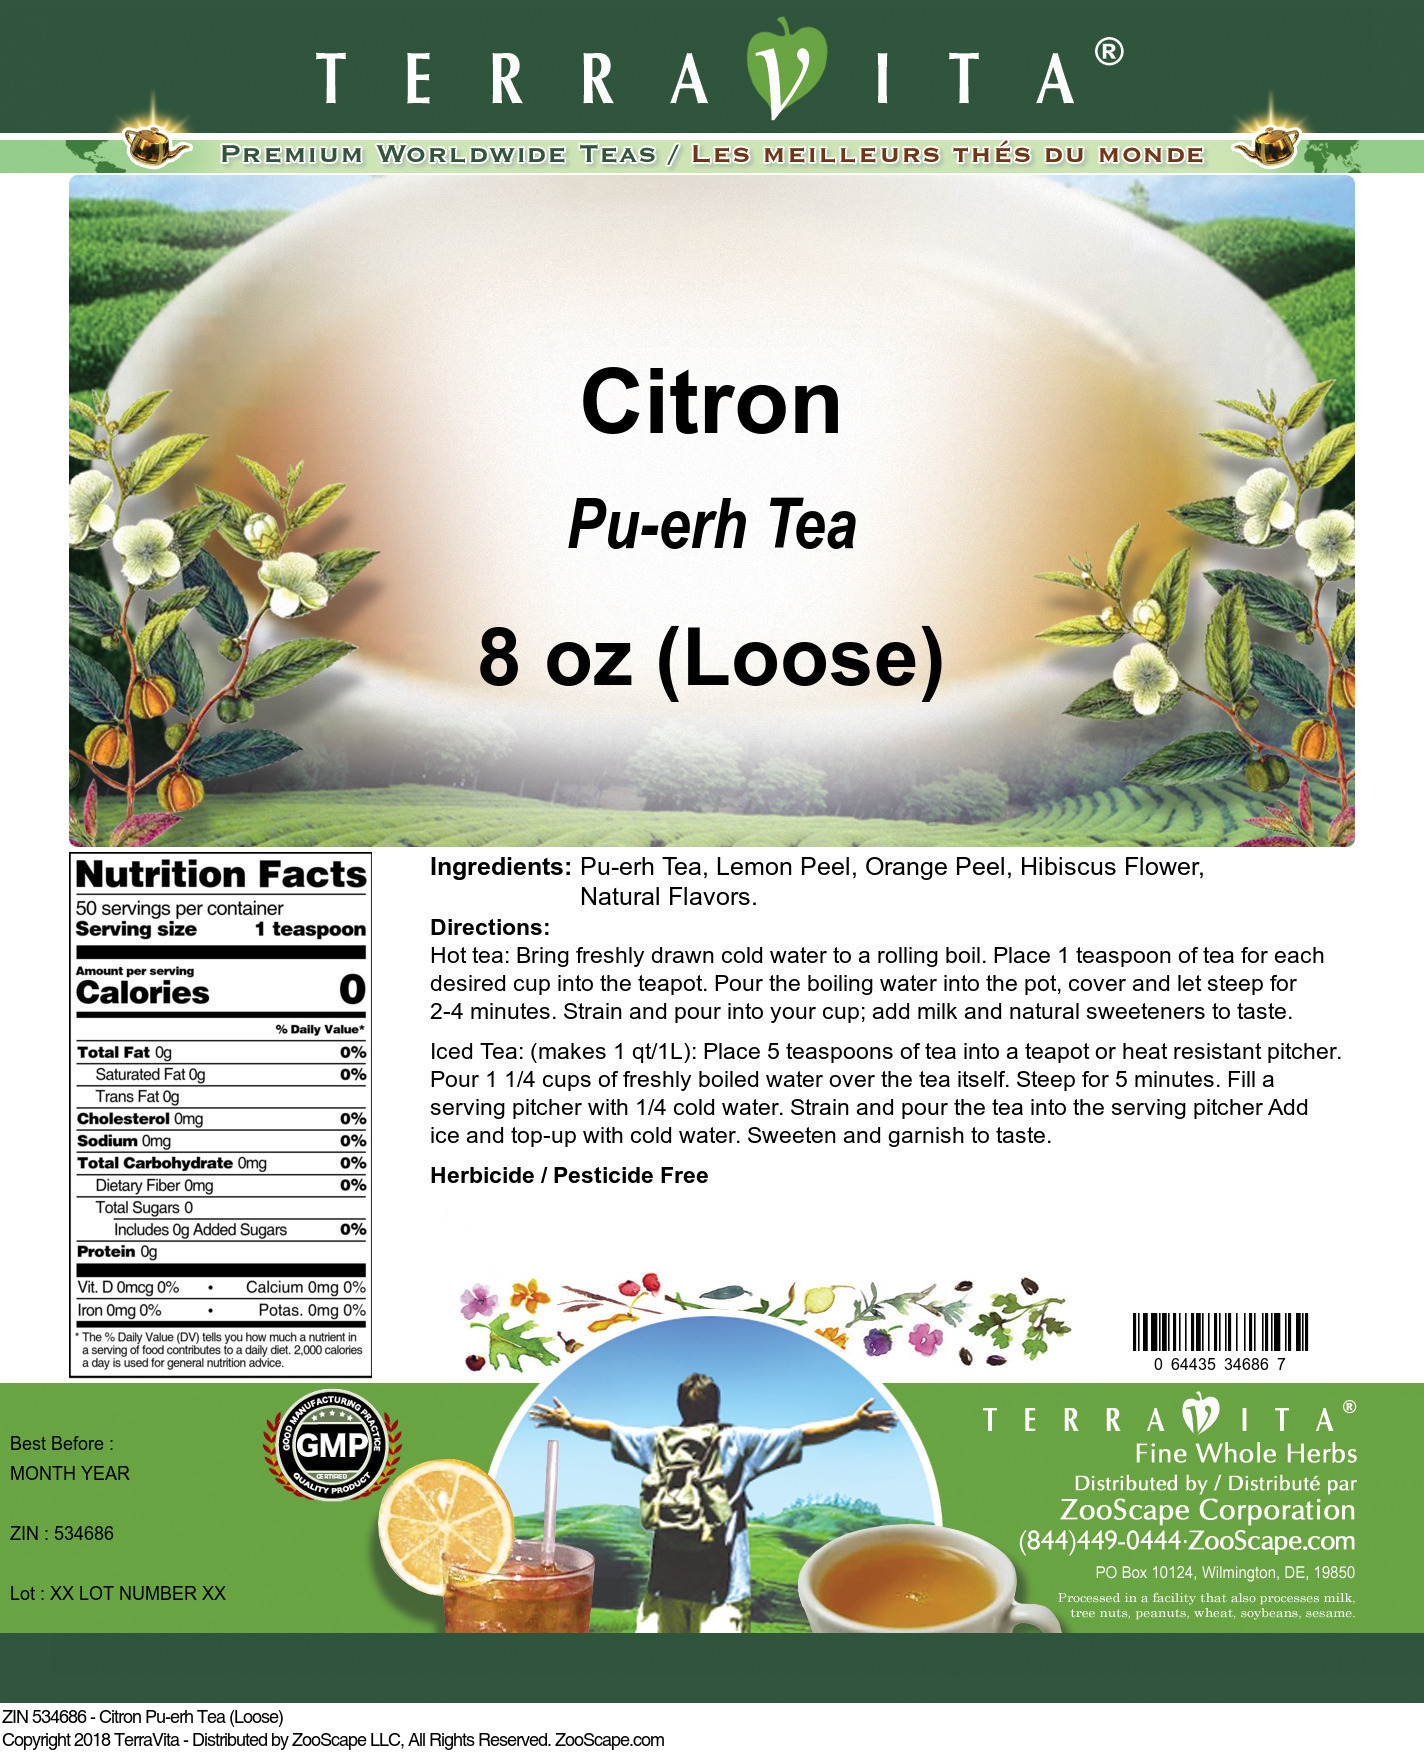 Citron Pu-erh Tea (Loose) - Label